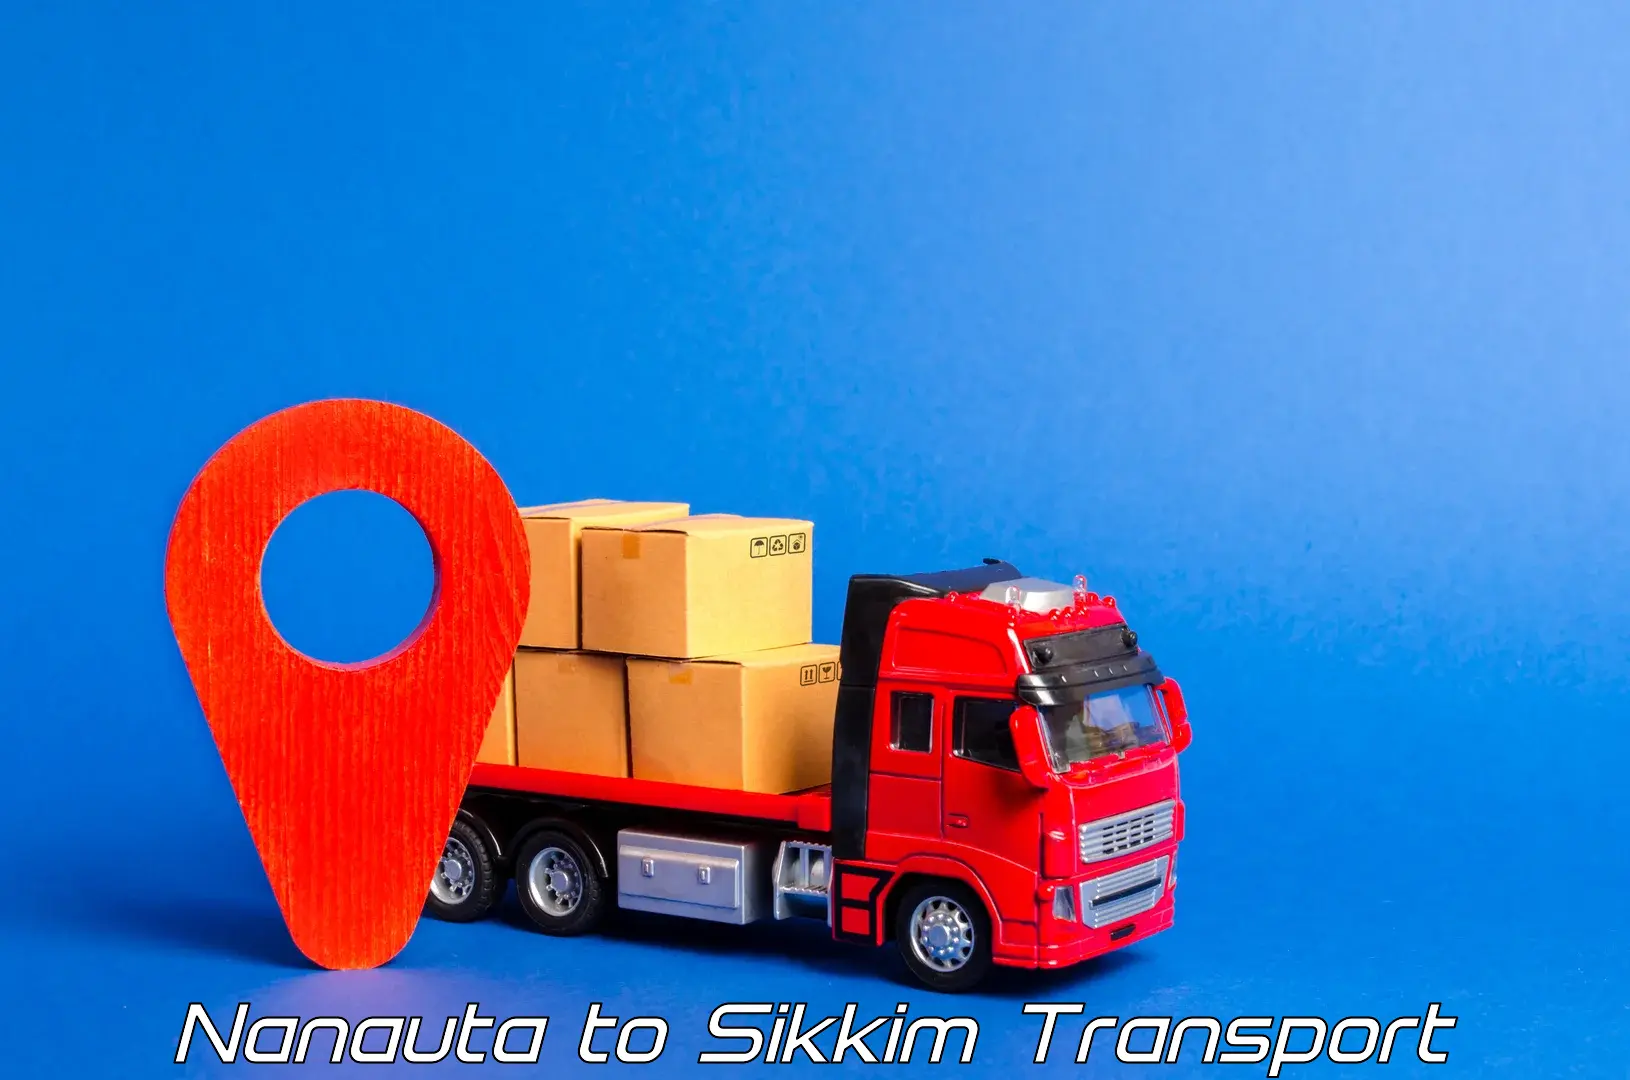 Two wheeler transport services Nanauta to Sikkim